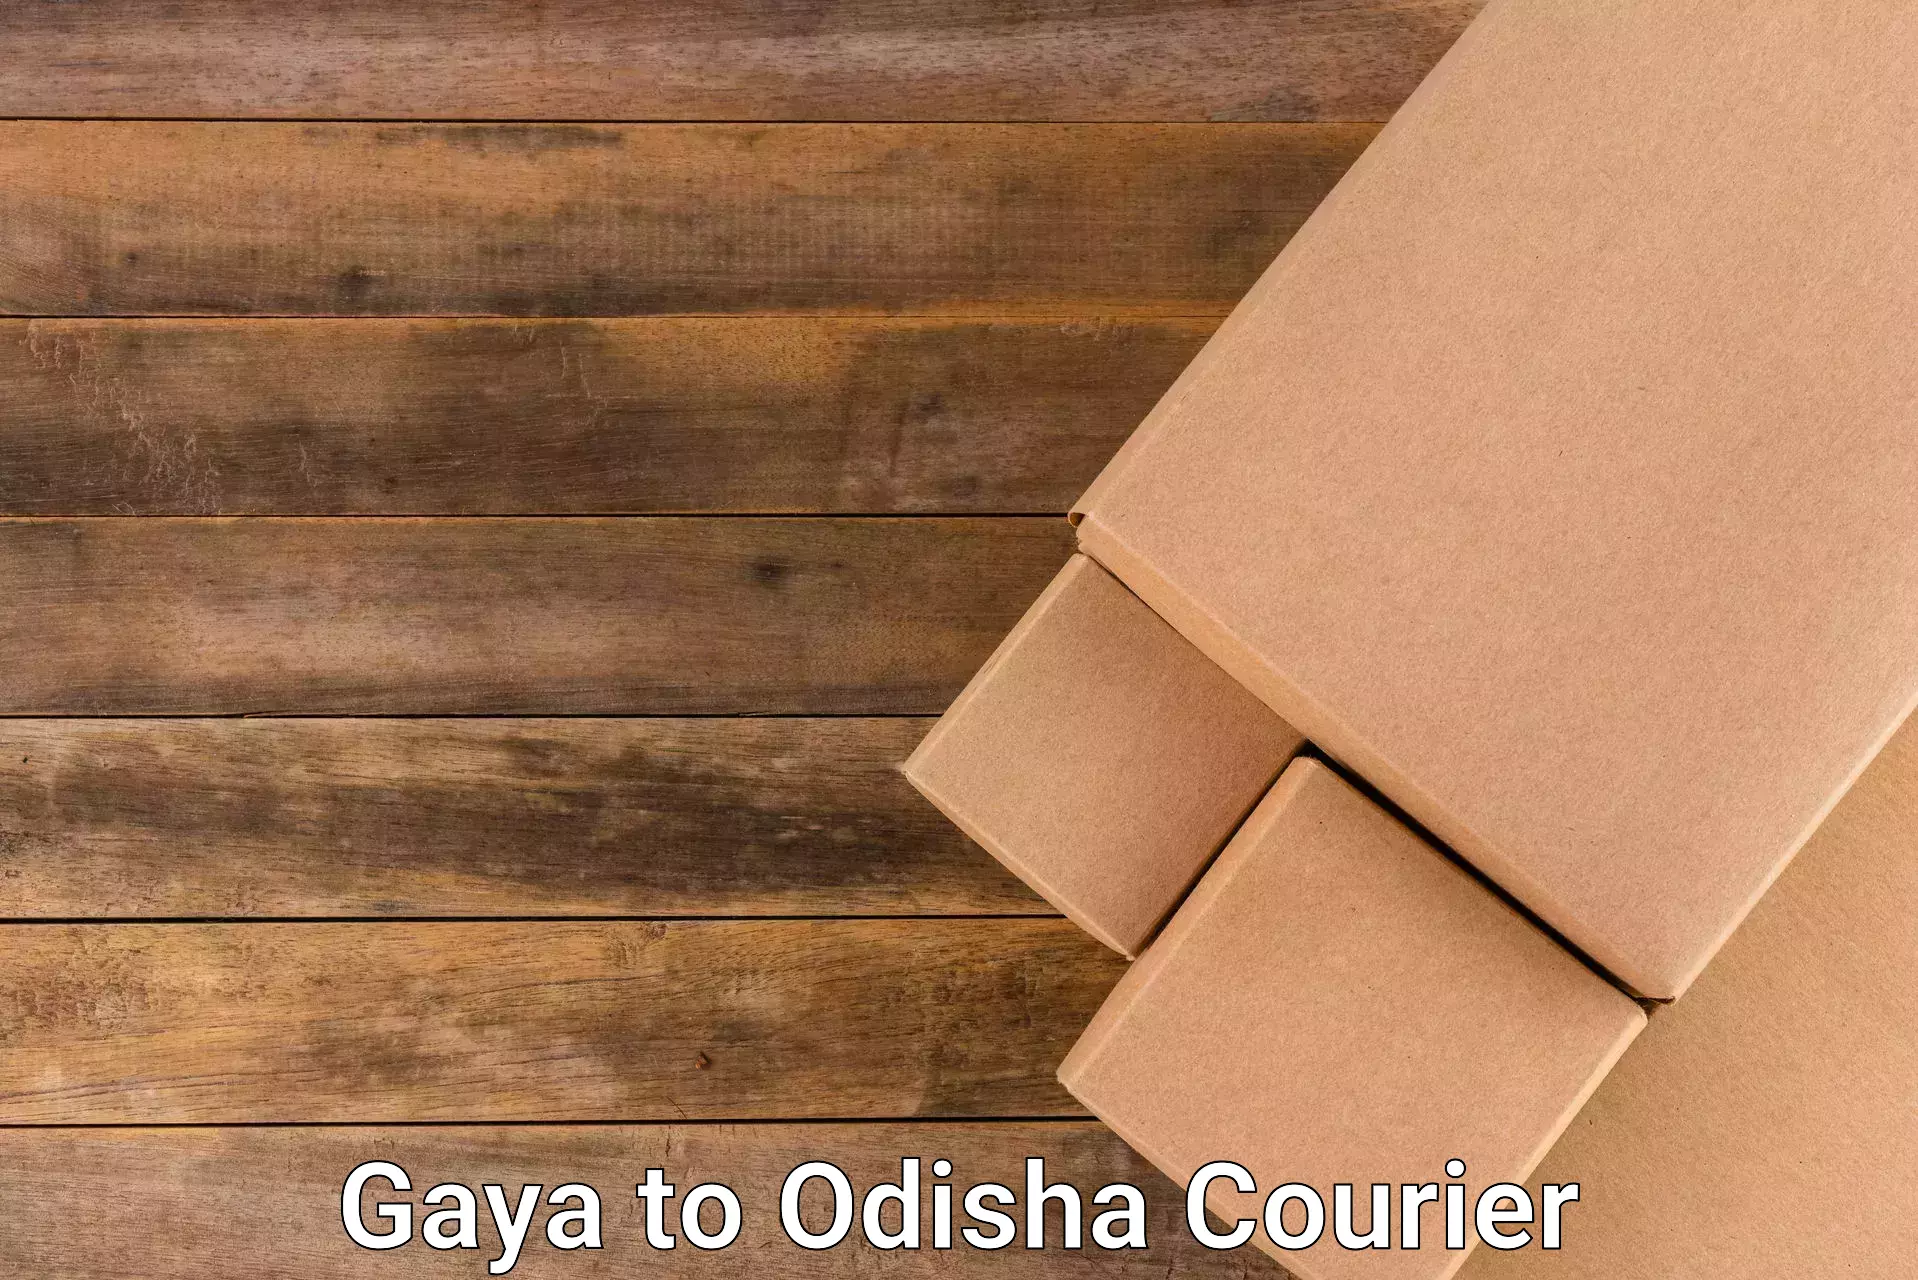 Express package handling Gaya to Odisha